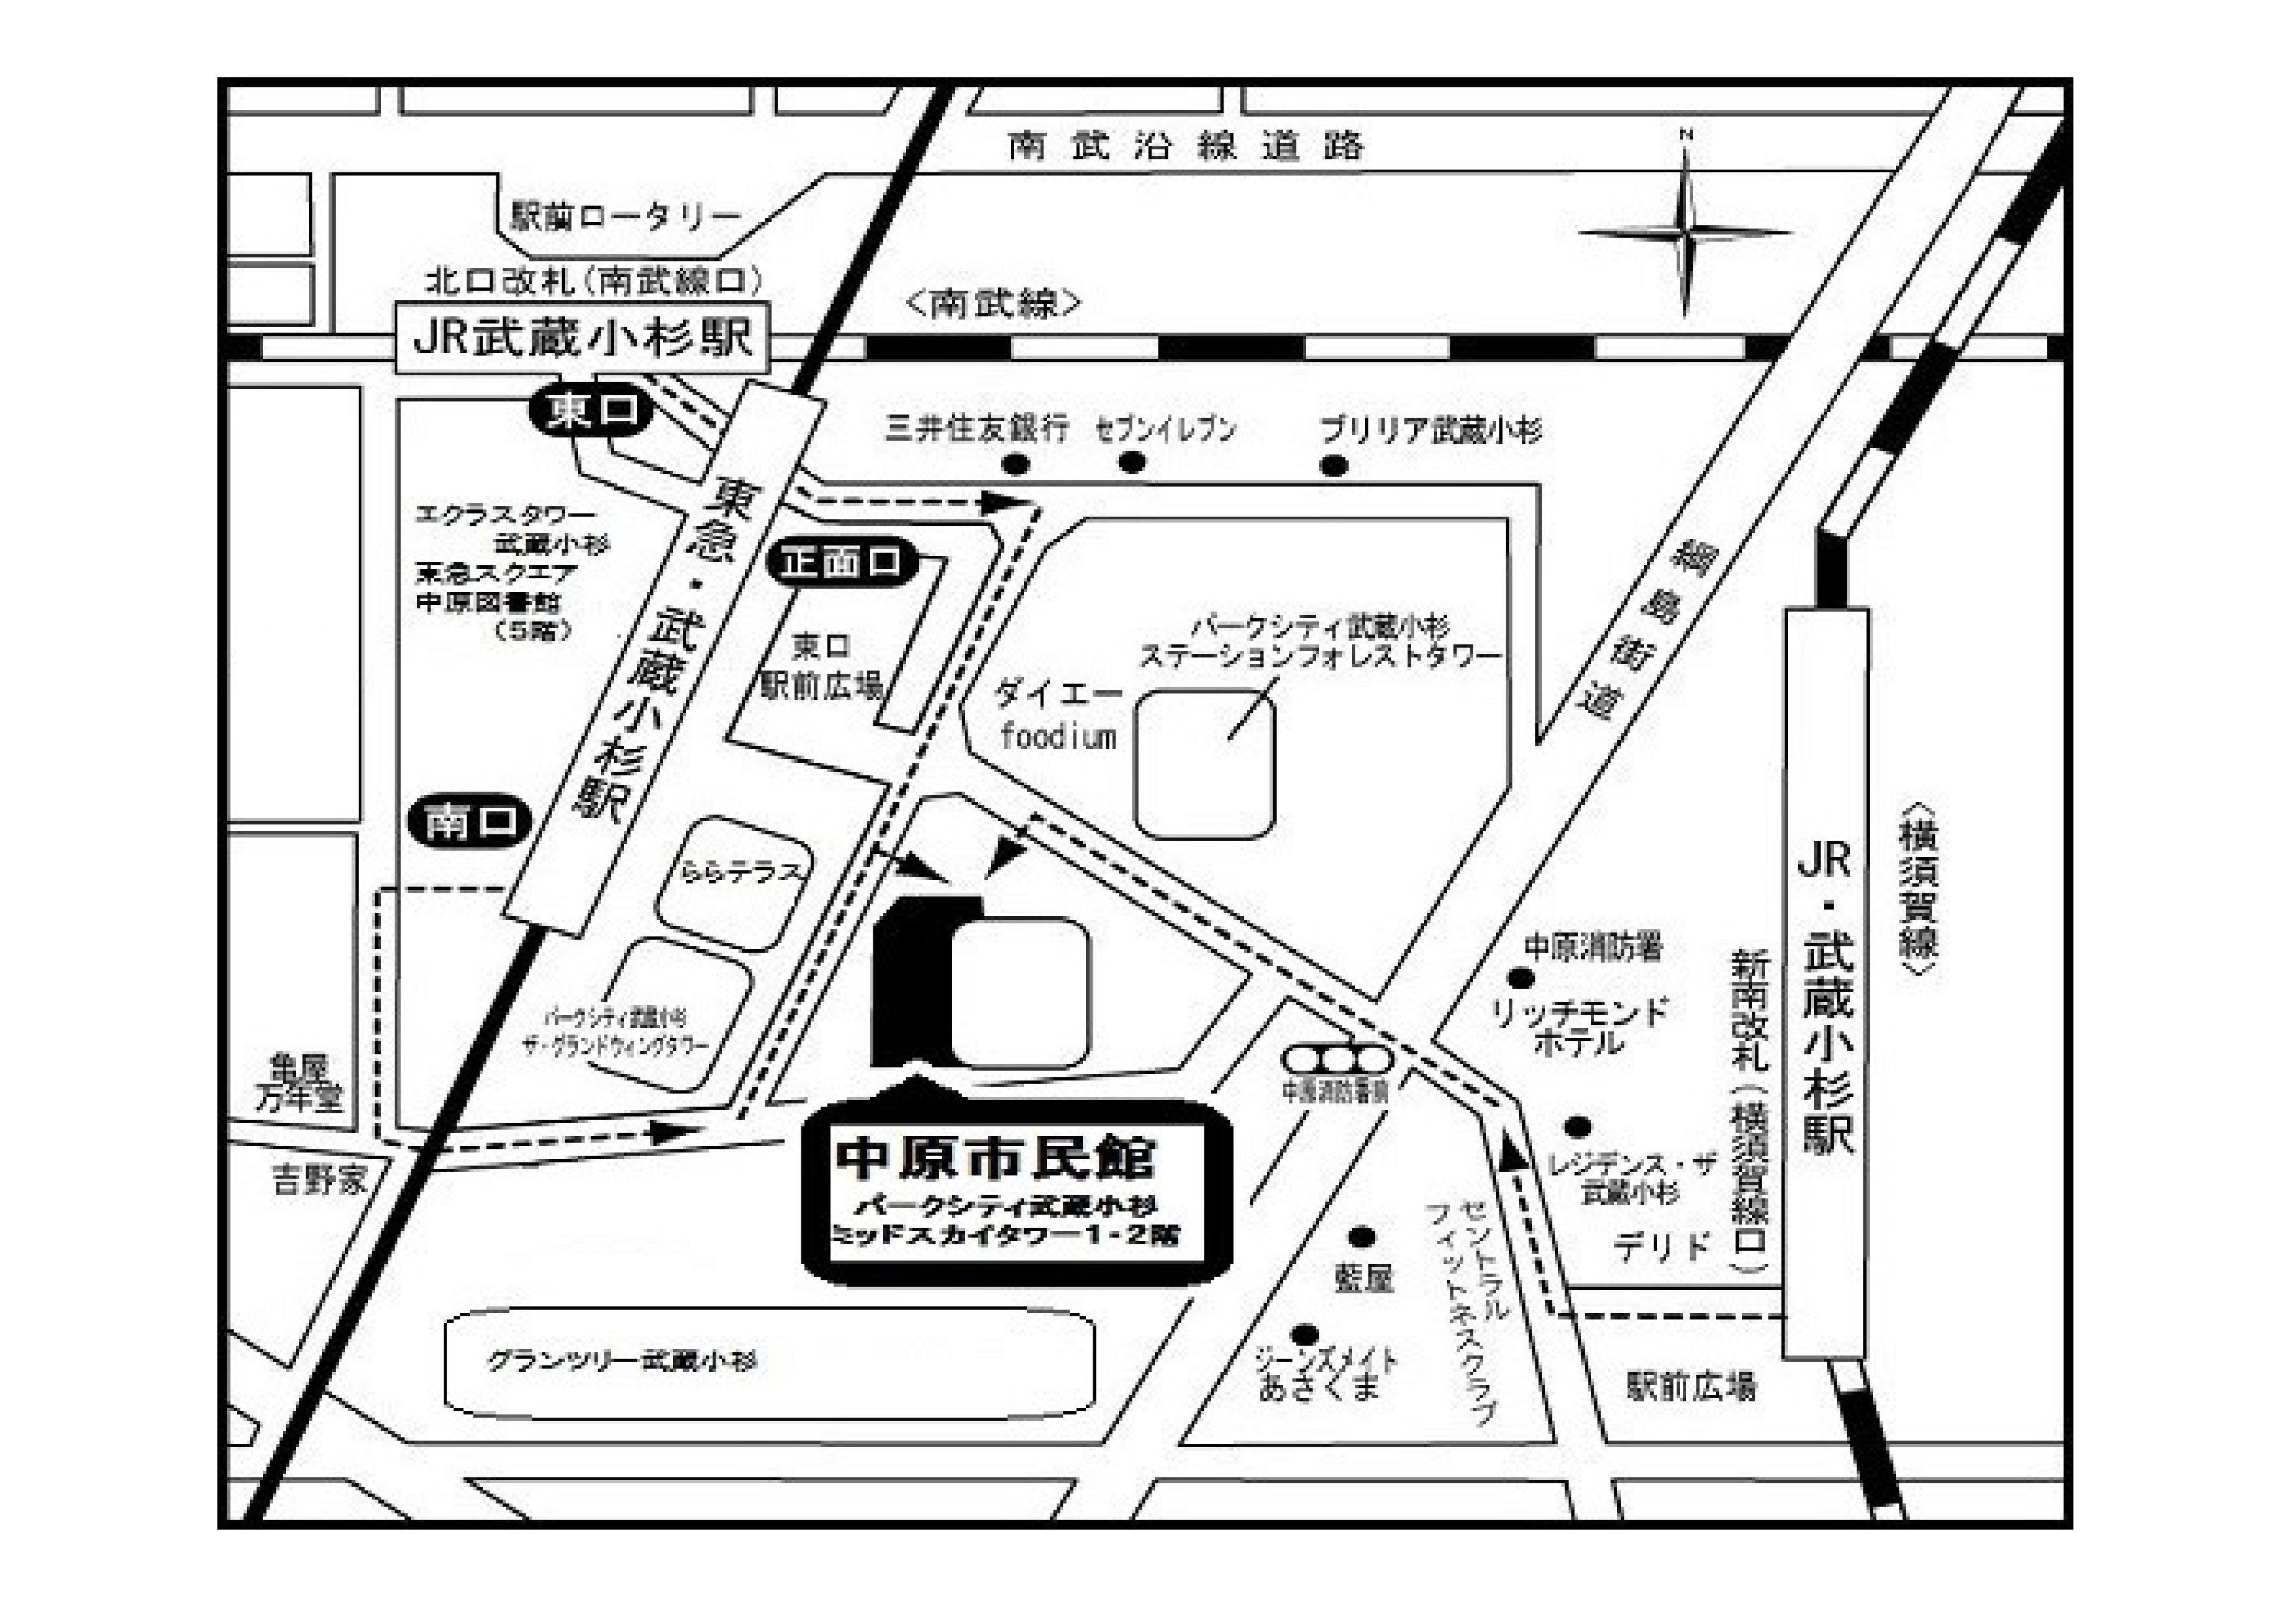 川崎市中原市民館への地図